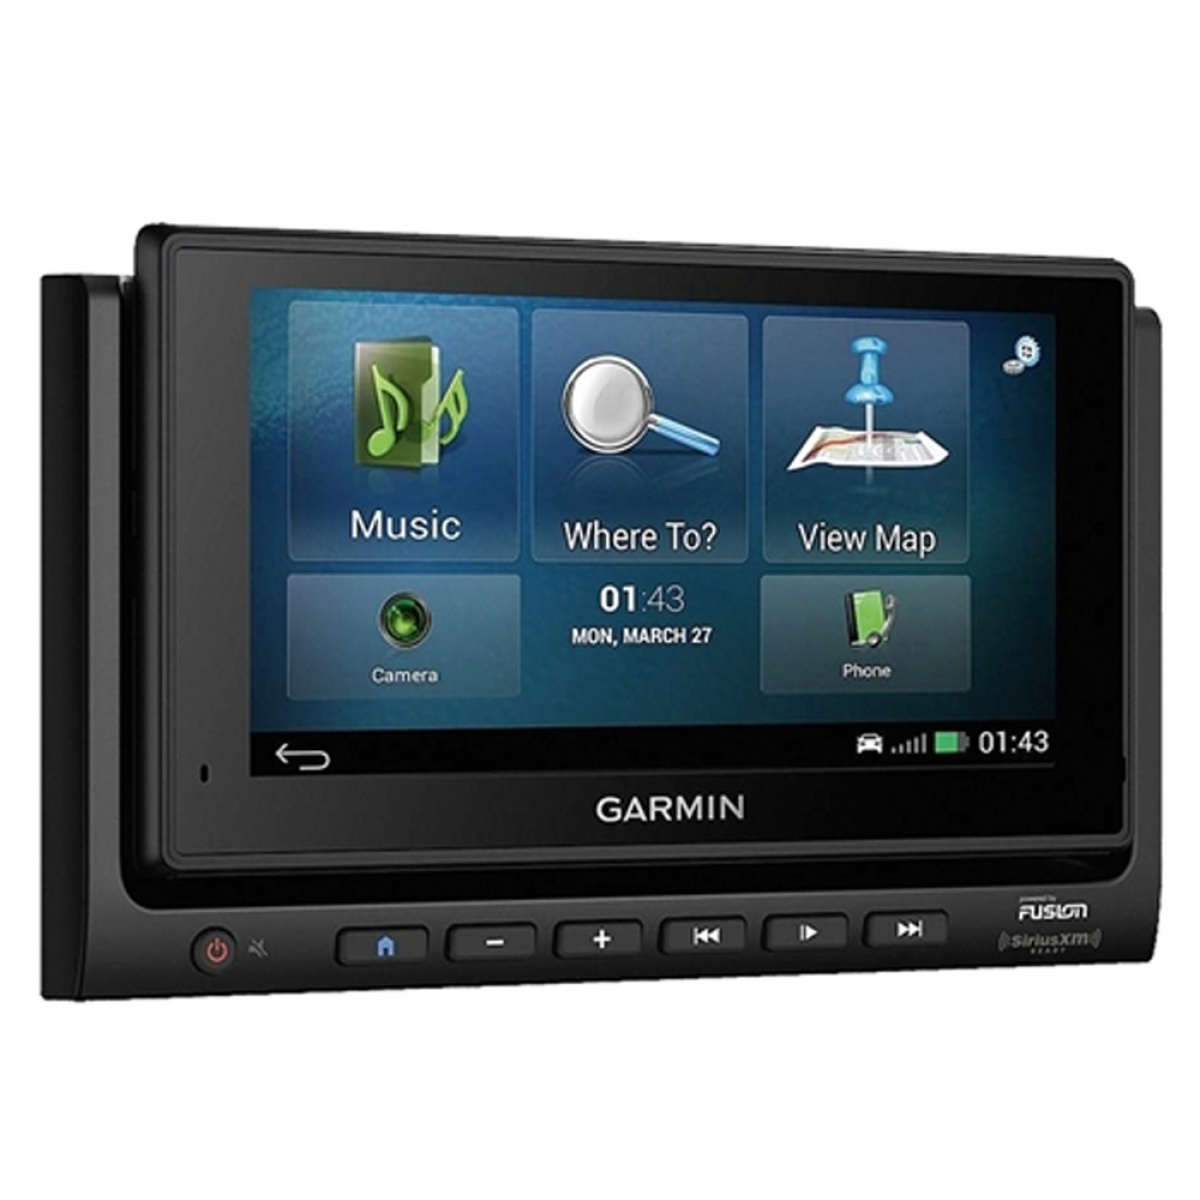 Fusion/Garmin Multimediaenhet RV-BBT602 i gruppen Husvagn & Husbil / Elektronik / Tv, Bild & Ljud / GPS hos Campingvaruhuset i Norden AB (65946)